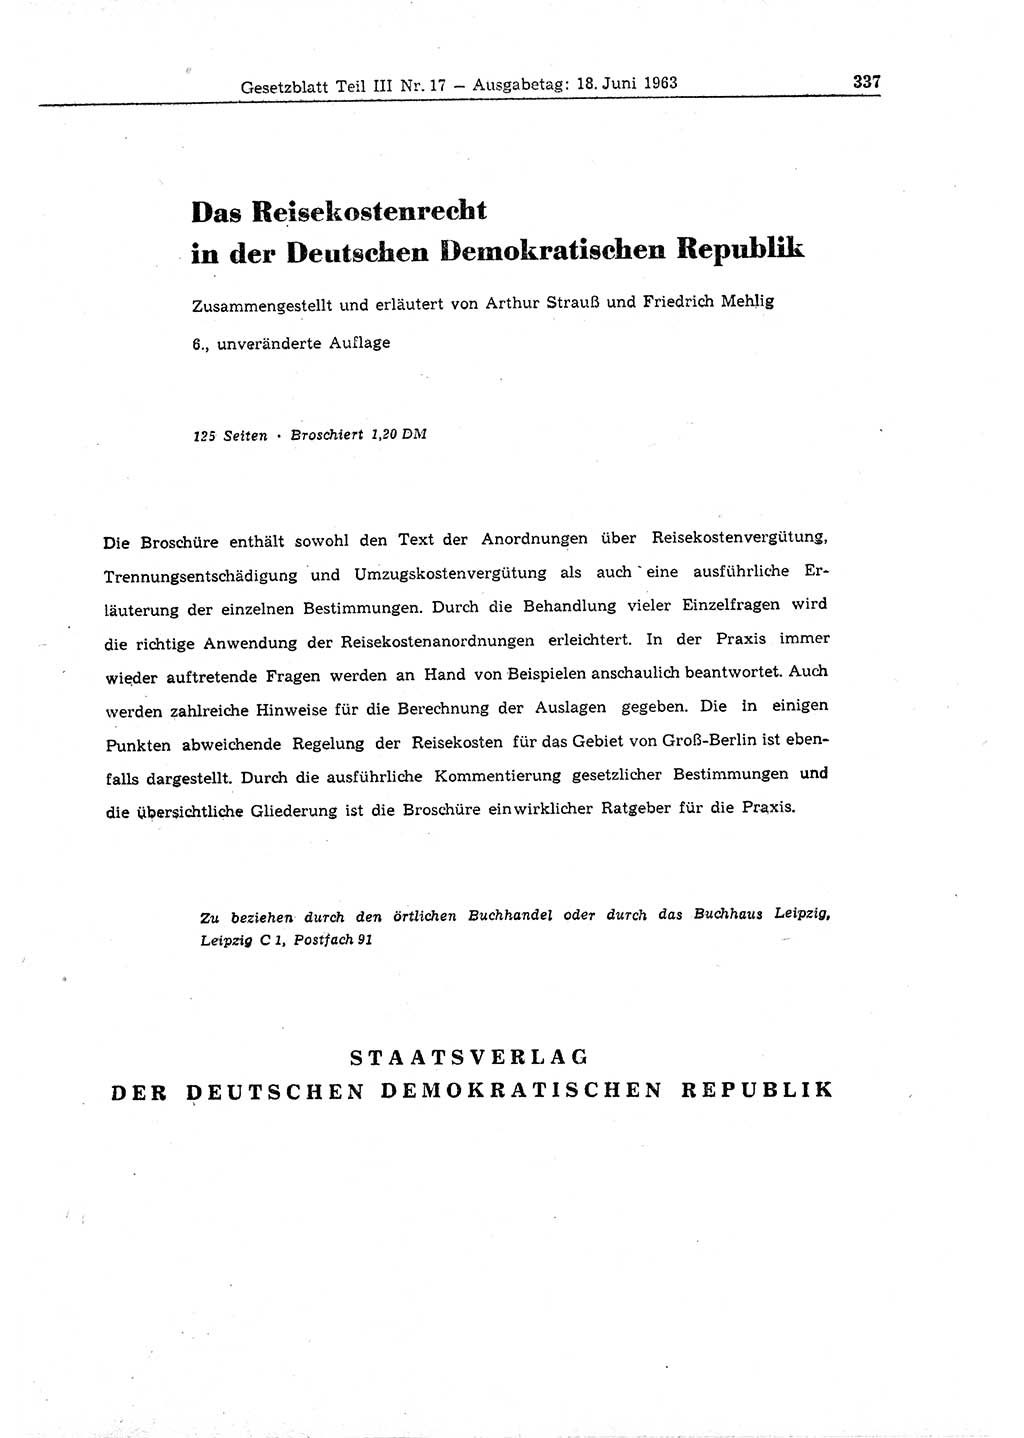 Gesetzblatt (GBl.) der Deutschen Demokratischen Republik (DDR) Teil ⅠⅠⅠ 1963, Seite 337 (GBl. DDR ⅠⅠⅠ 1963, S. 337)